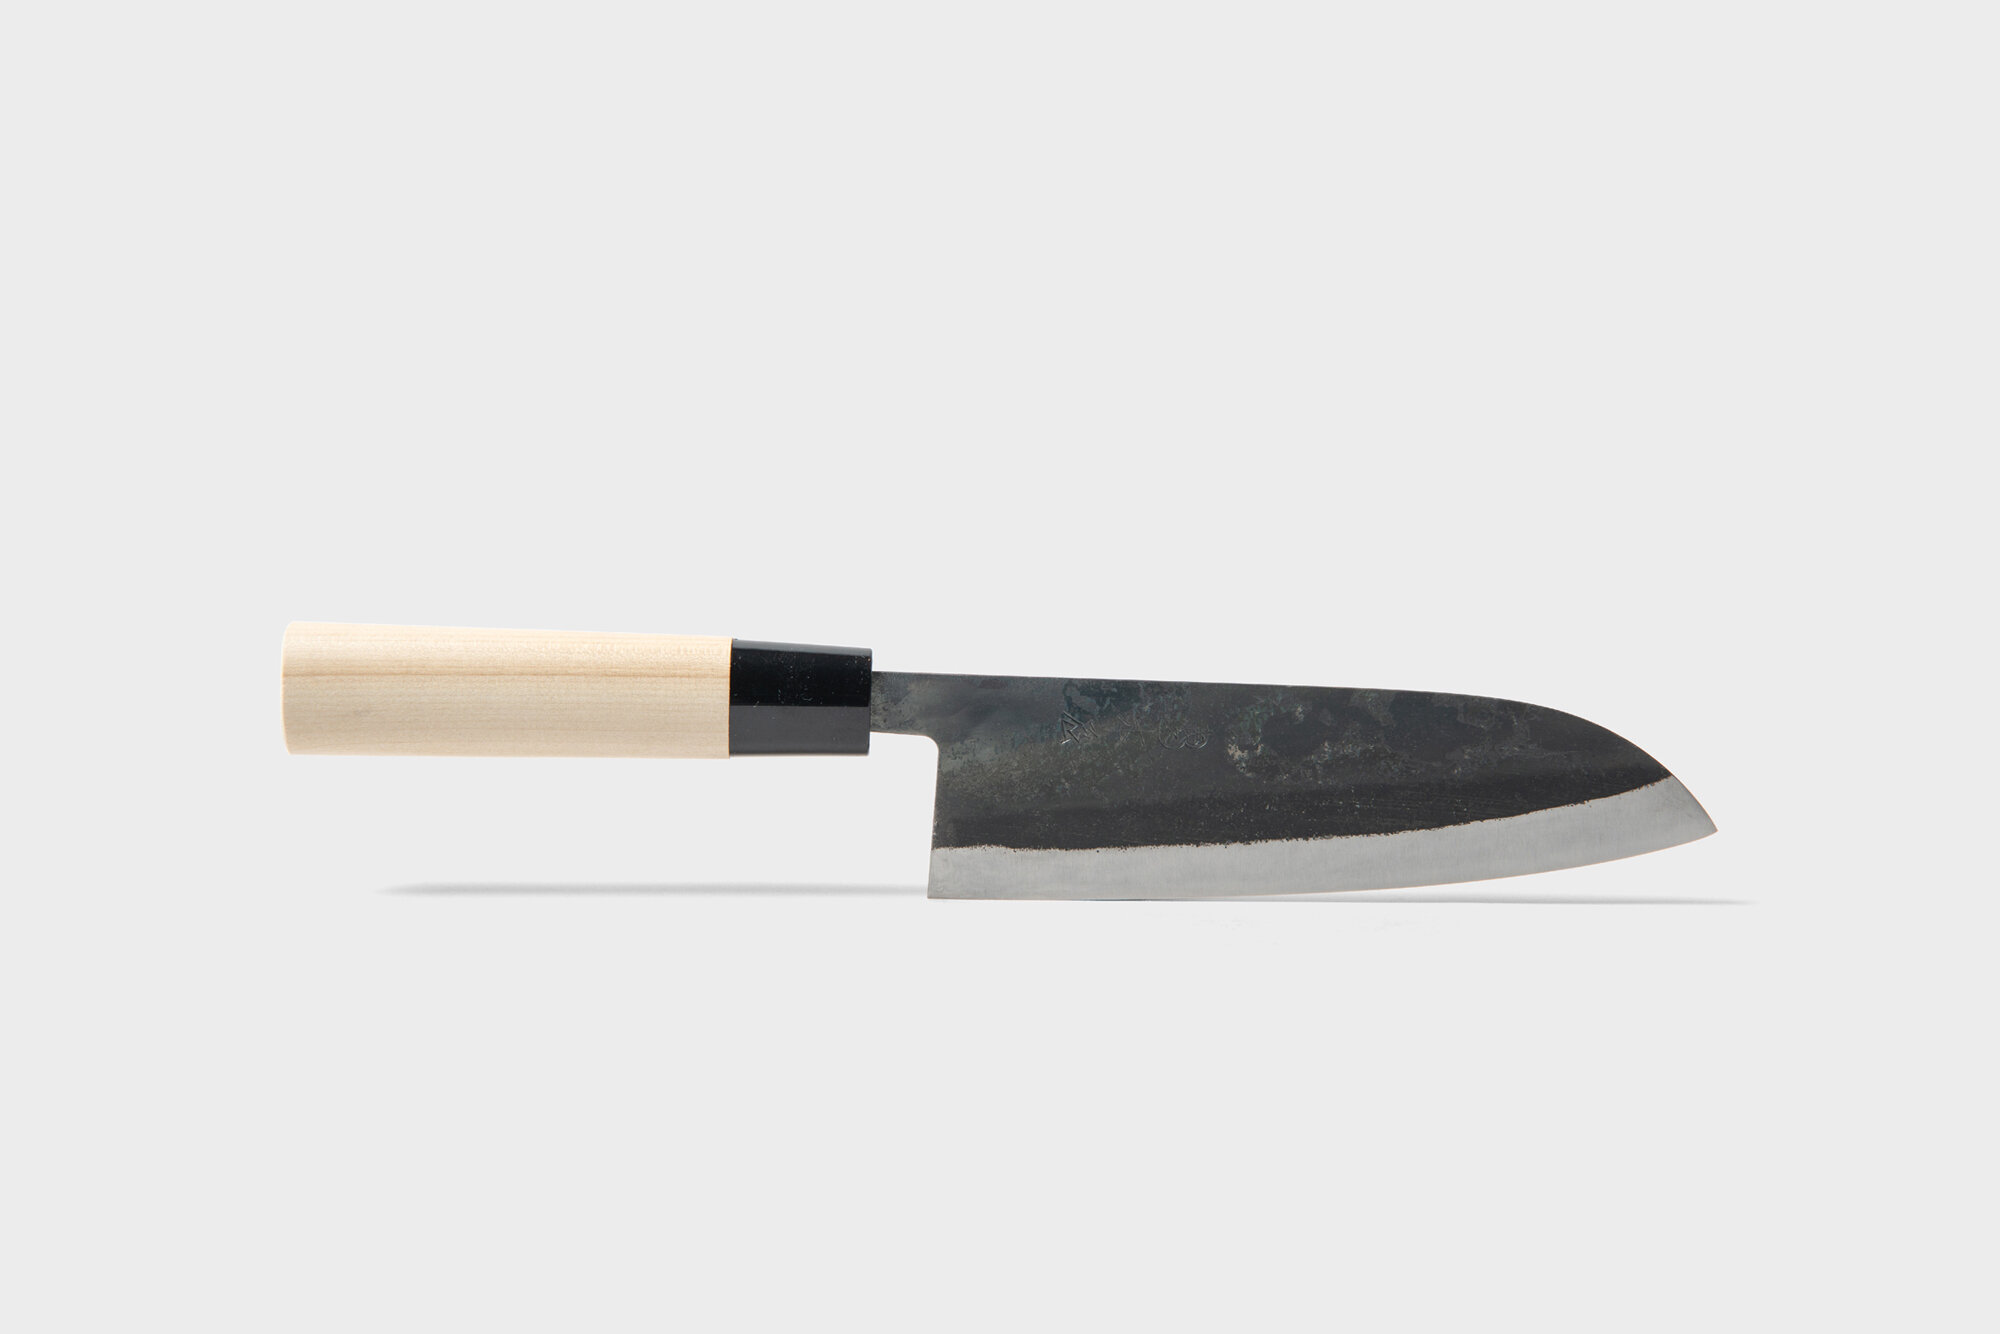 Beskrivelse dug matron Daily Care for Japanese Steel Knives | Nakiri Knife ( Kamagata / Slicer) -  Native & Co | Japanese Homeware Shop | Online & In-Store London